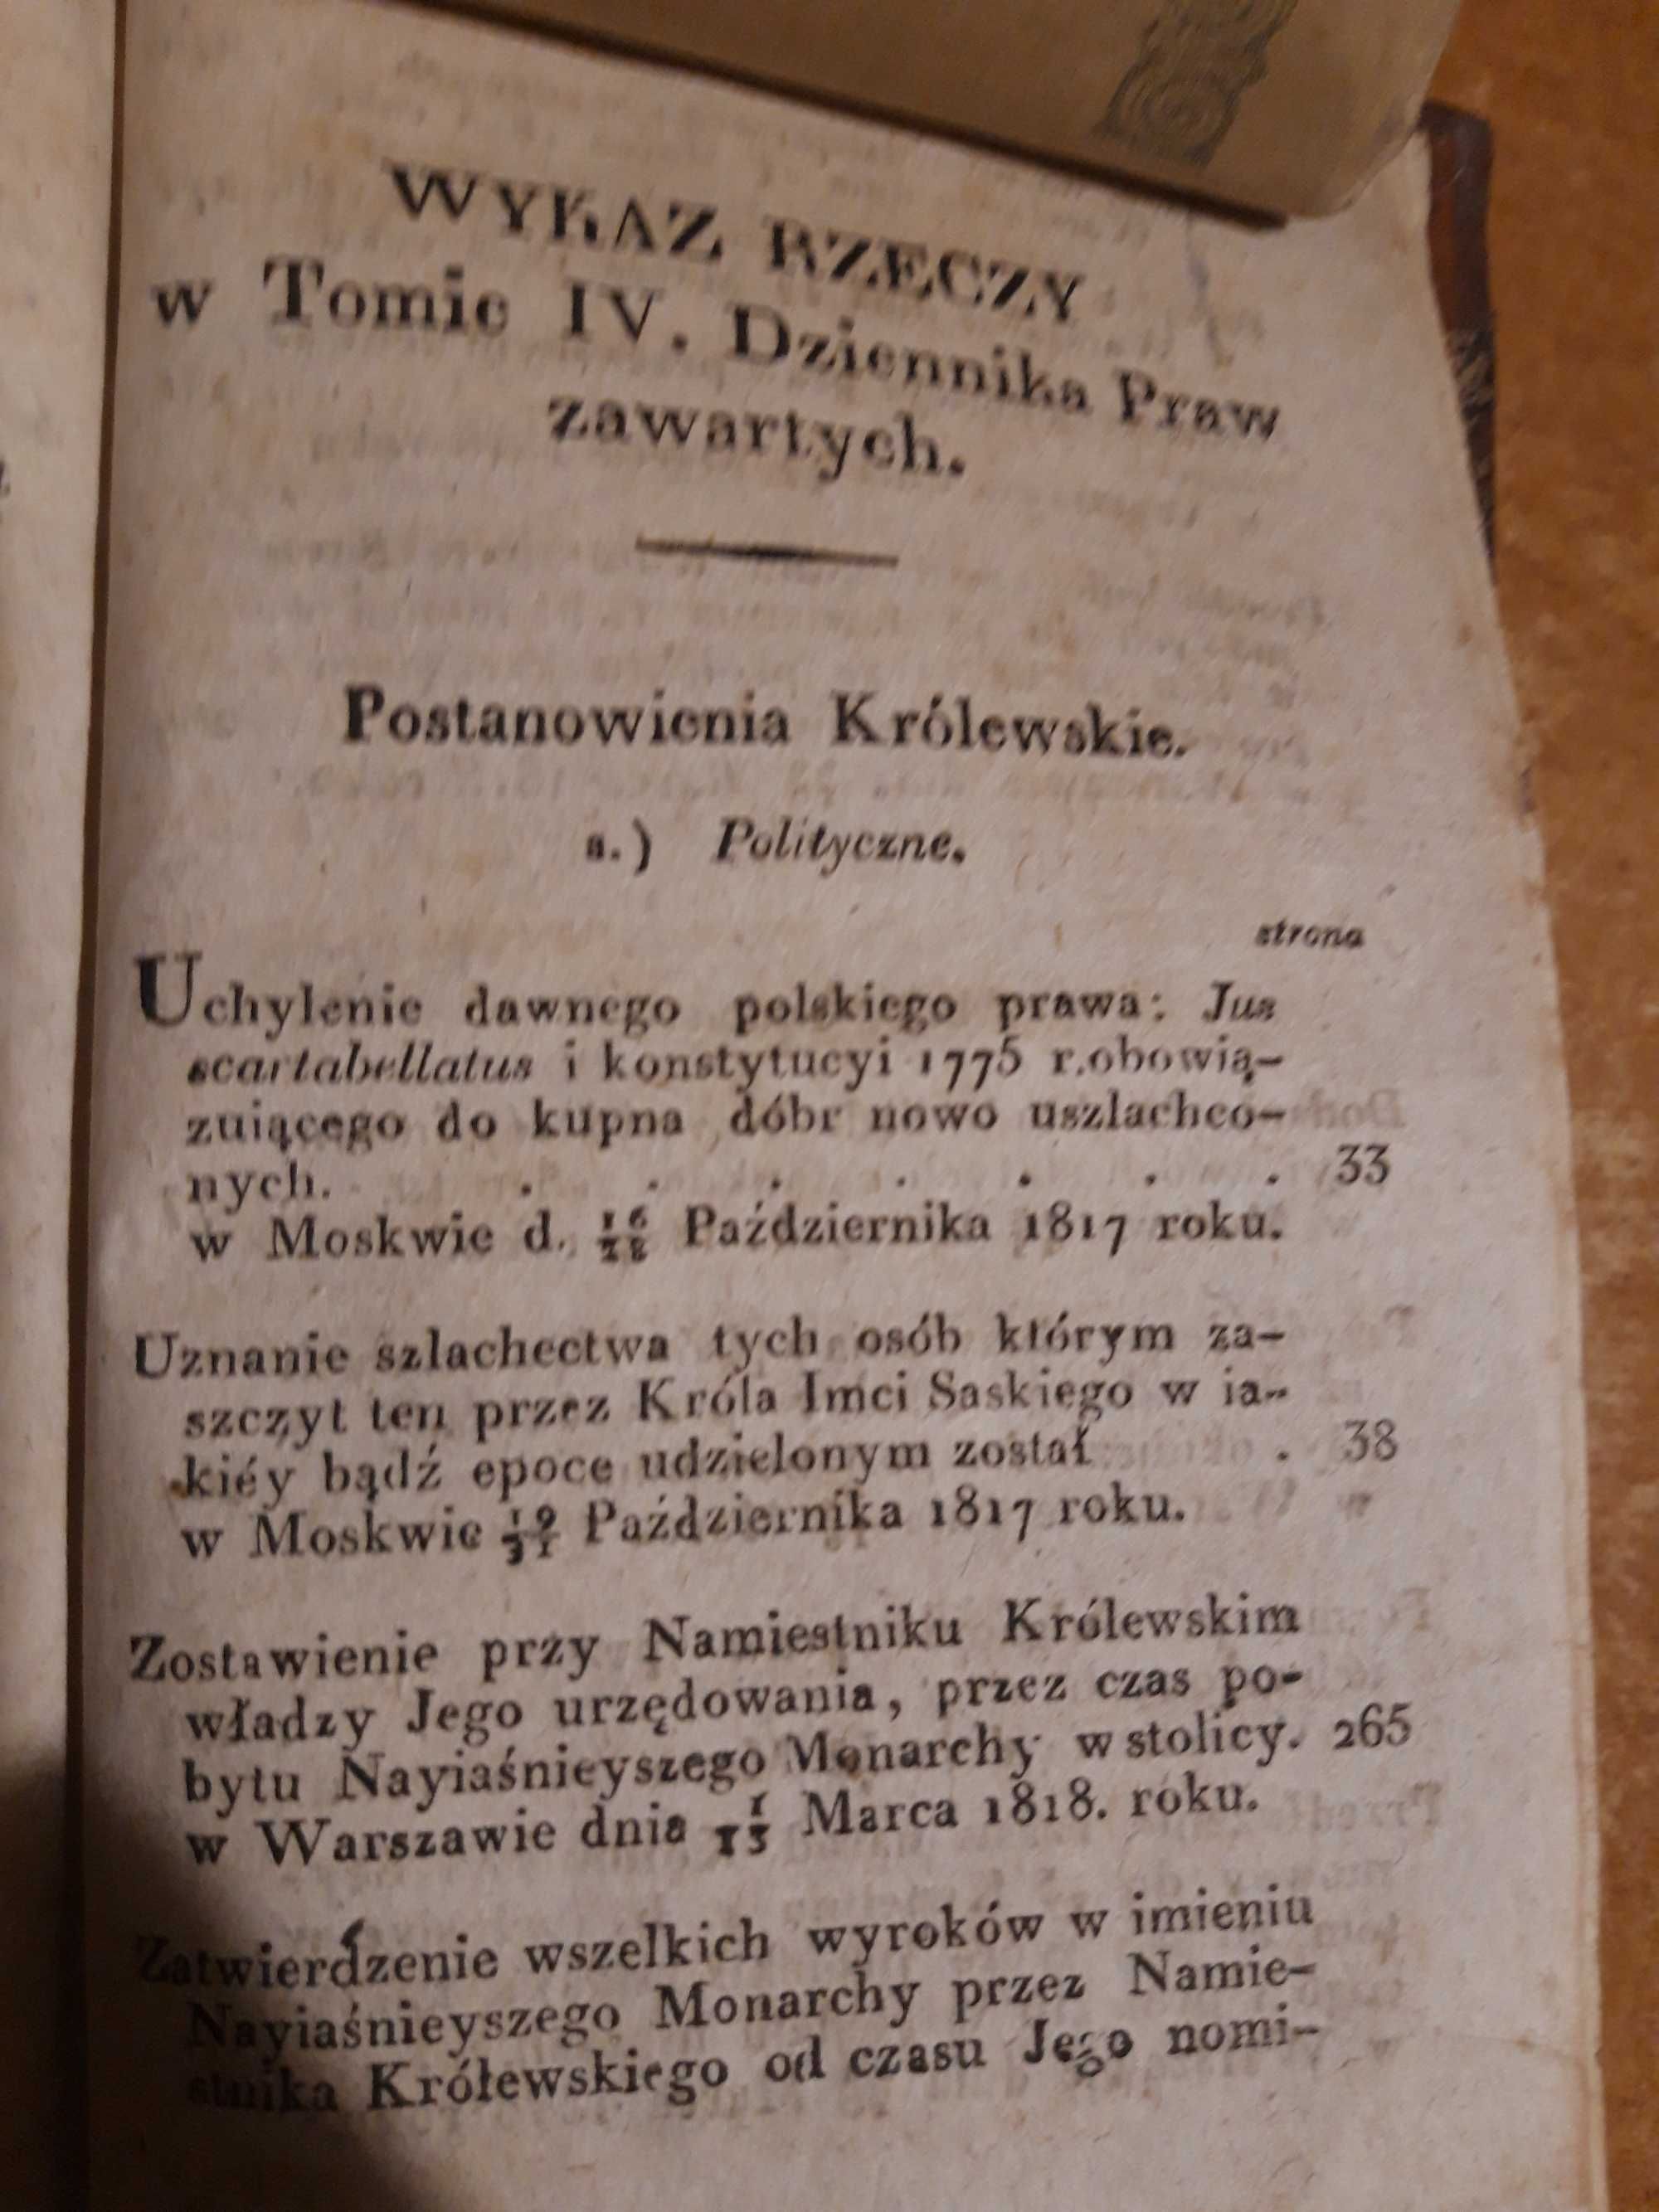 DZIENNIK  PRAW, T. IV - W-wa 1818 opr., antyk